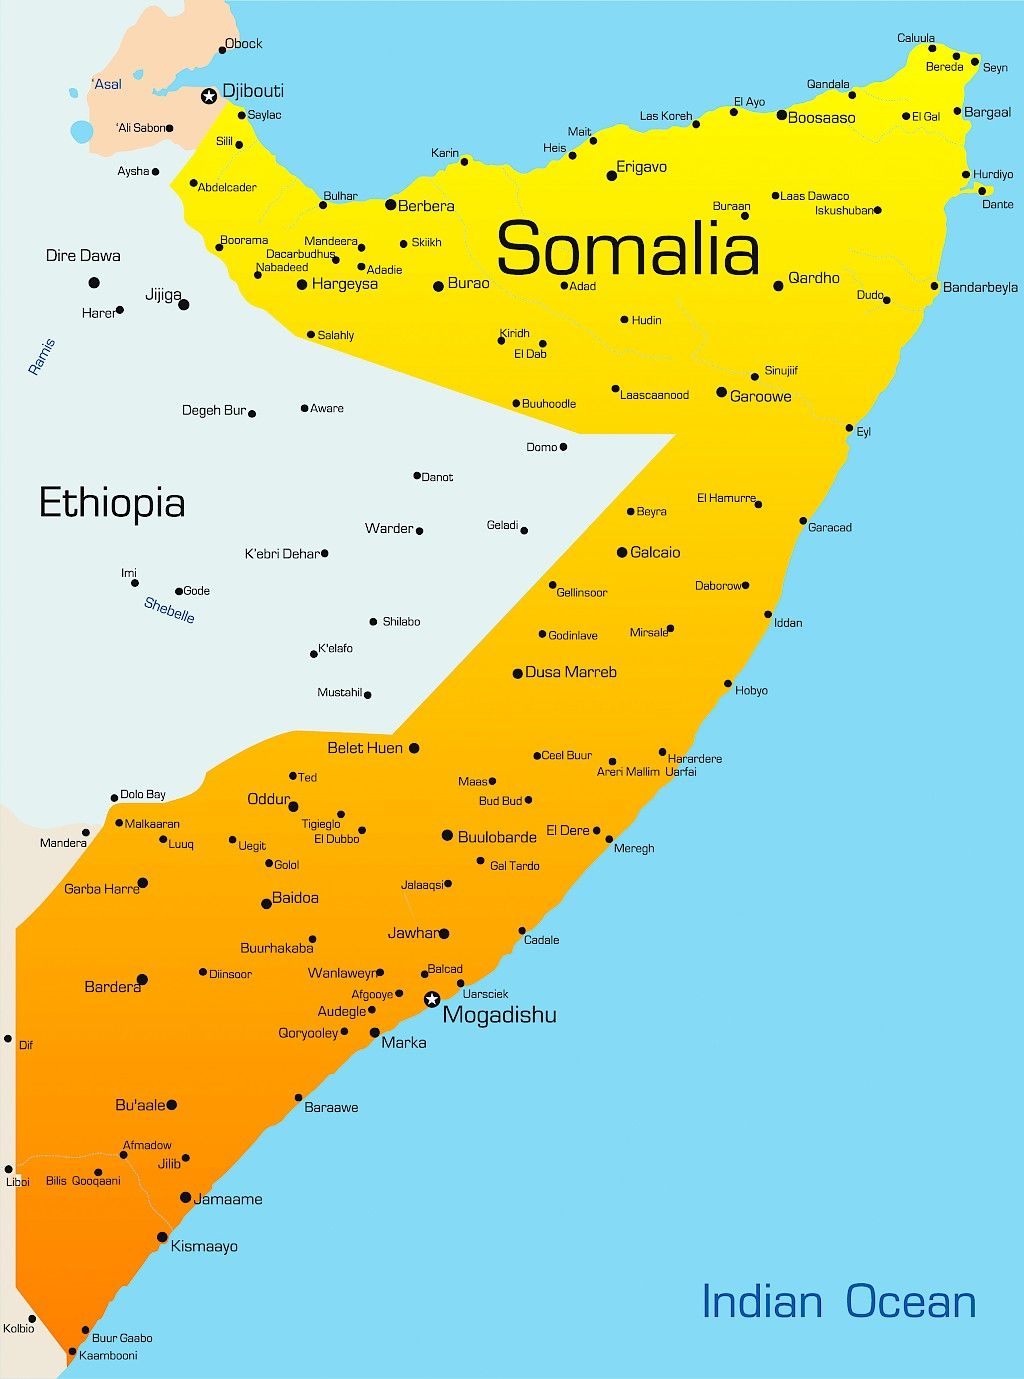 Polio leviää Somaliassa